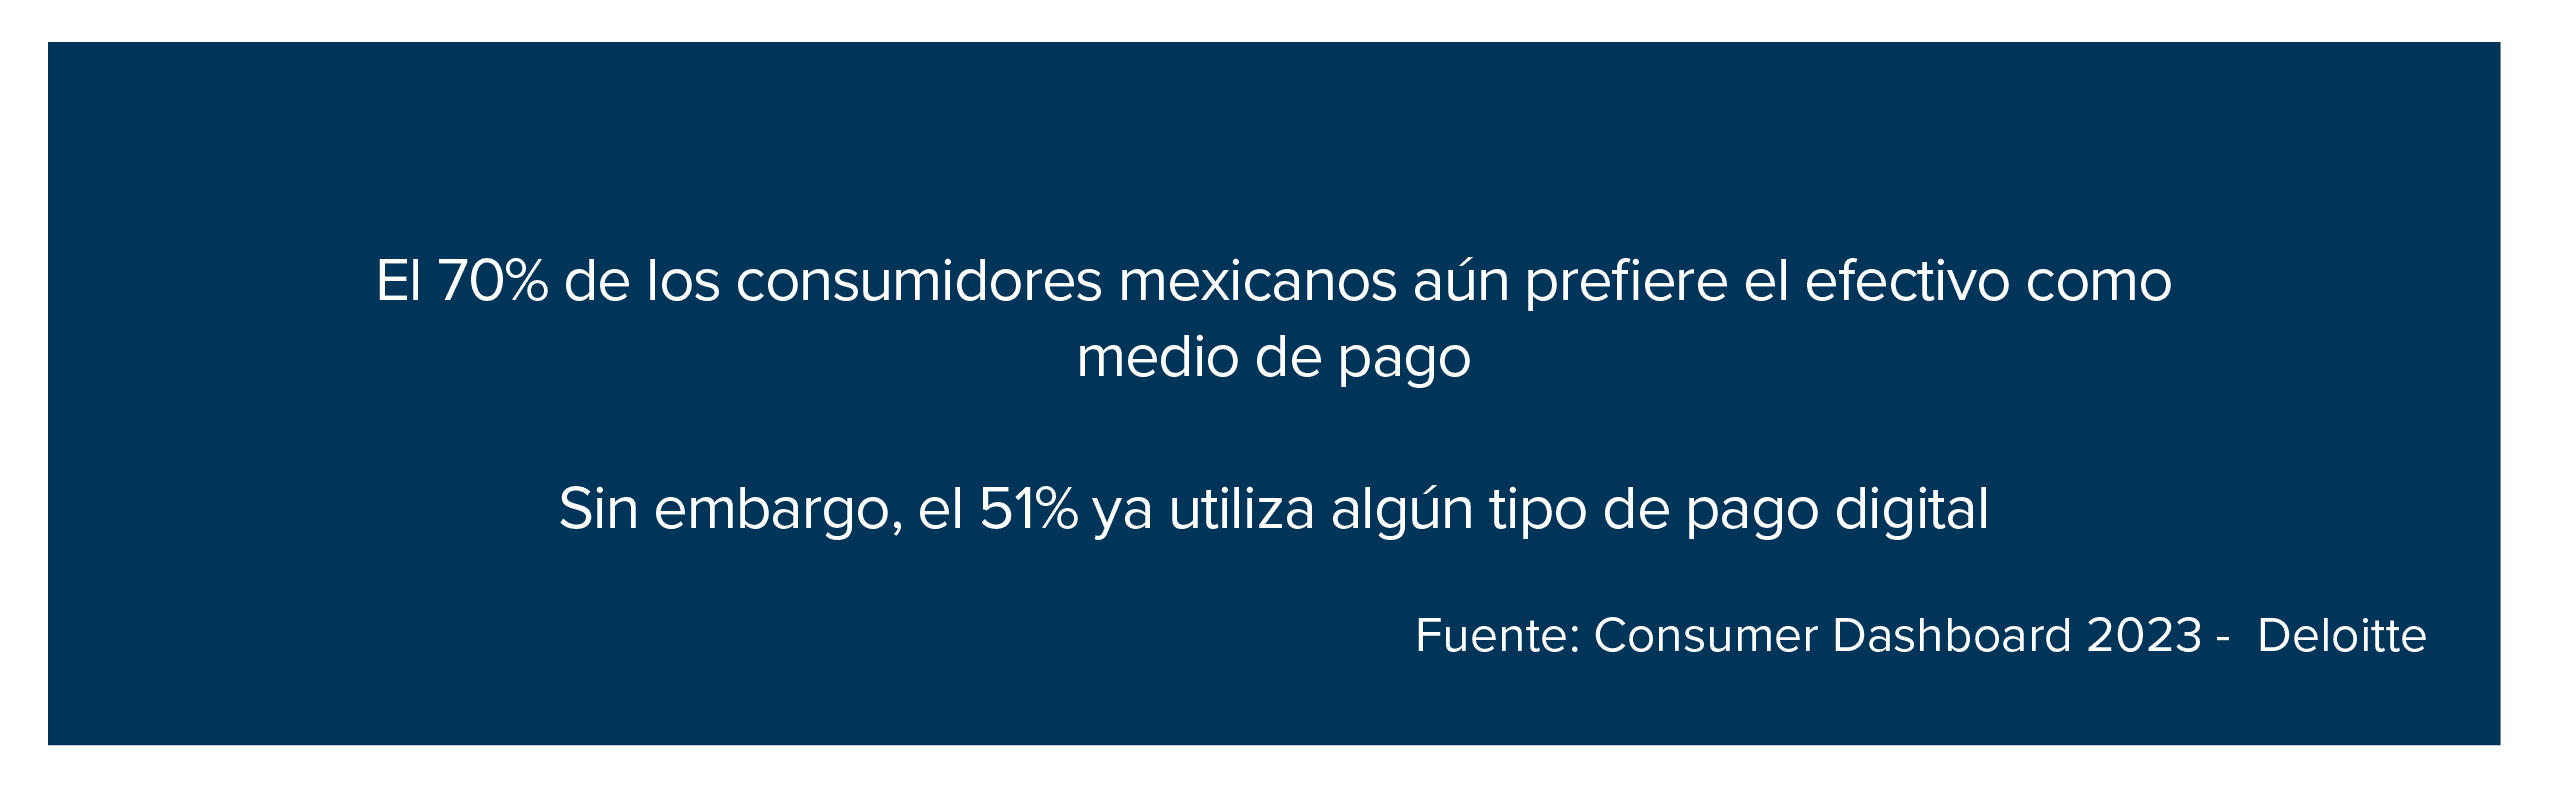 El 70% de los consumidores mexicanos aún prefiere el efectivo como medio de pago 

Sin embargo, el 51% ya utiliza algún tipo de pago digital